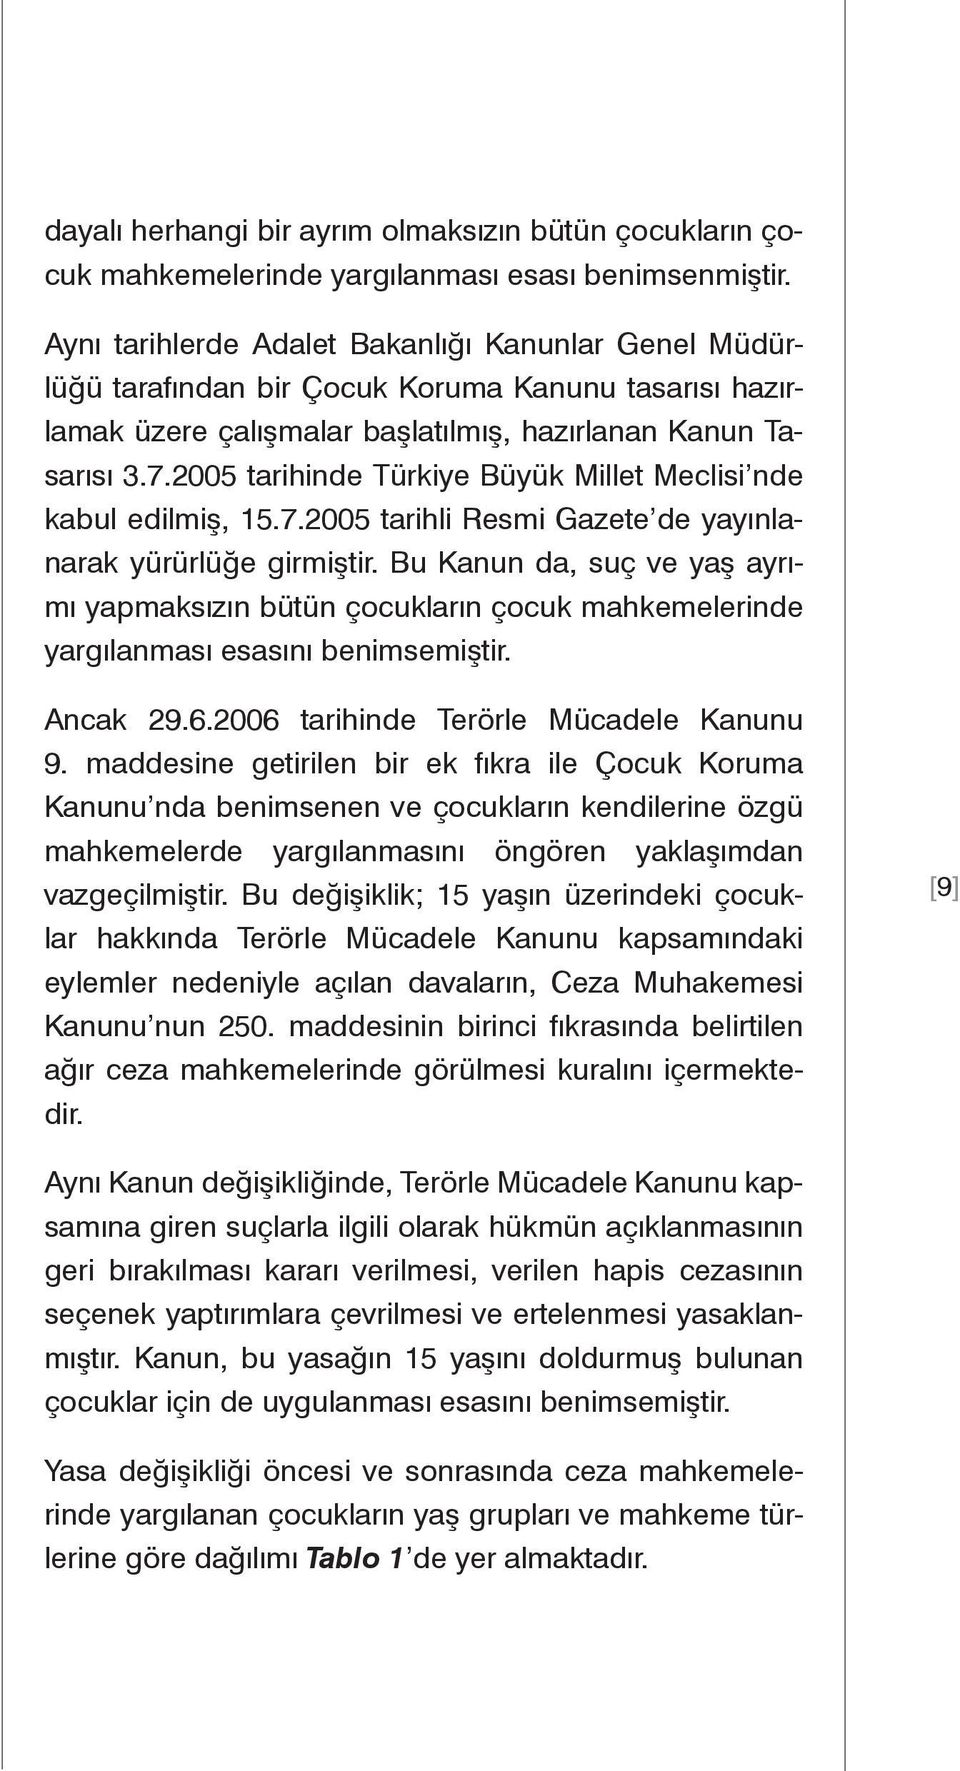 2005 tarihinde Türkiye Büyük Millet Meclisi nde kabul edilmiş, 15.7.2005 tarihli Resmi Gazete de yayınlanarak yürürlüğe girmiştir.